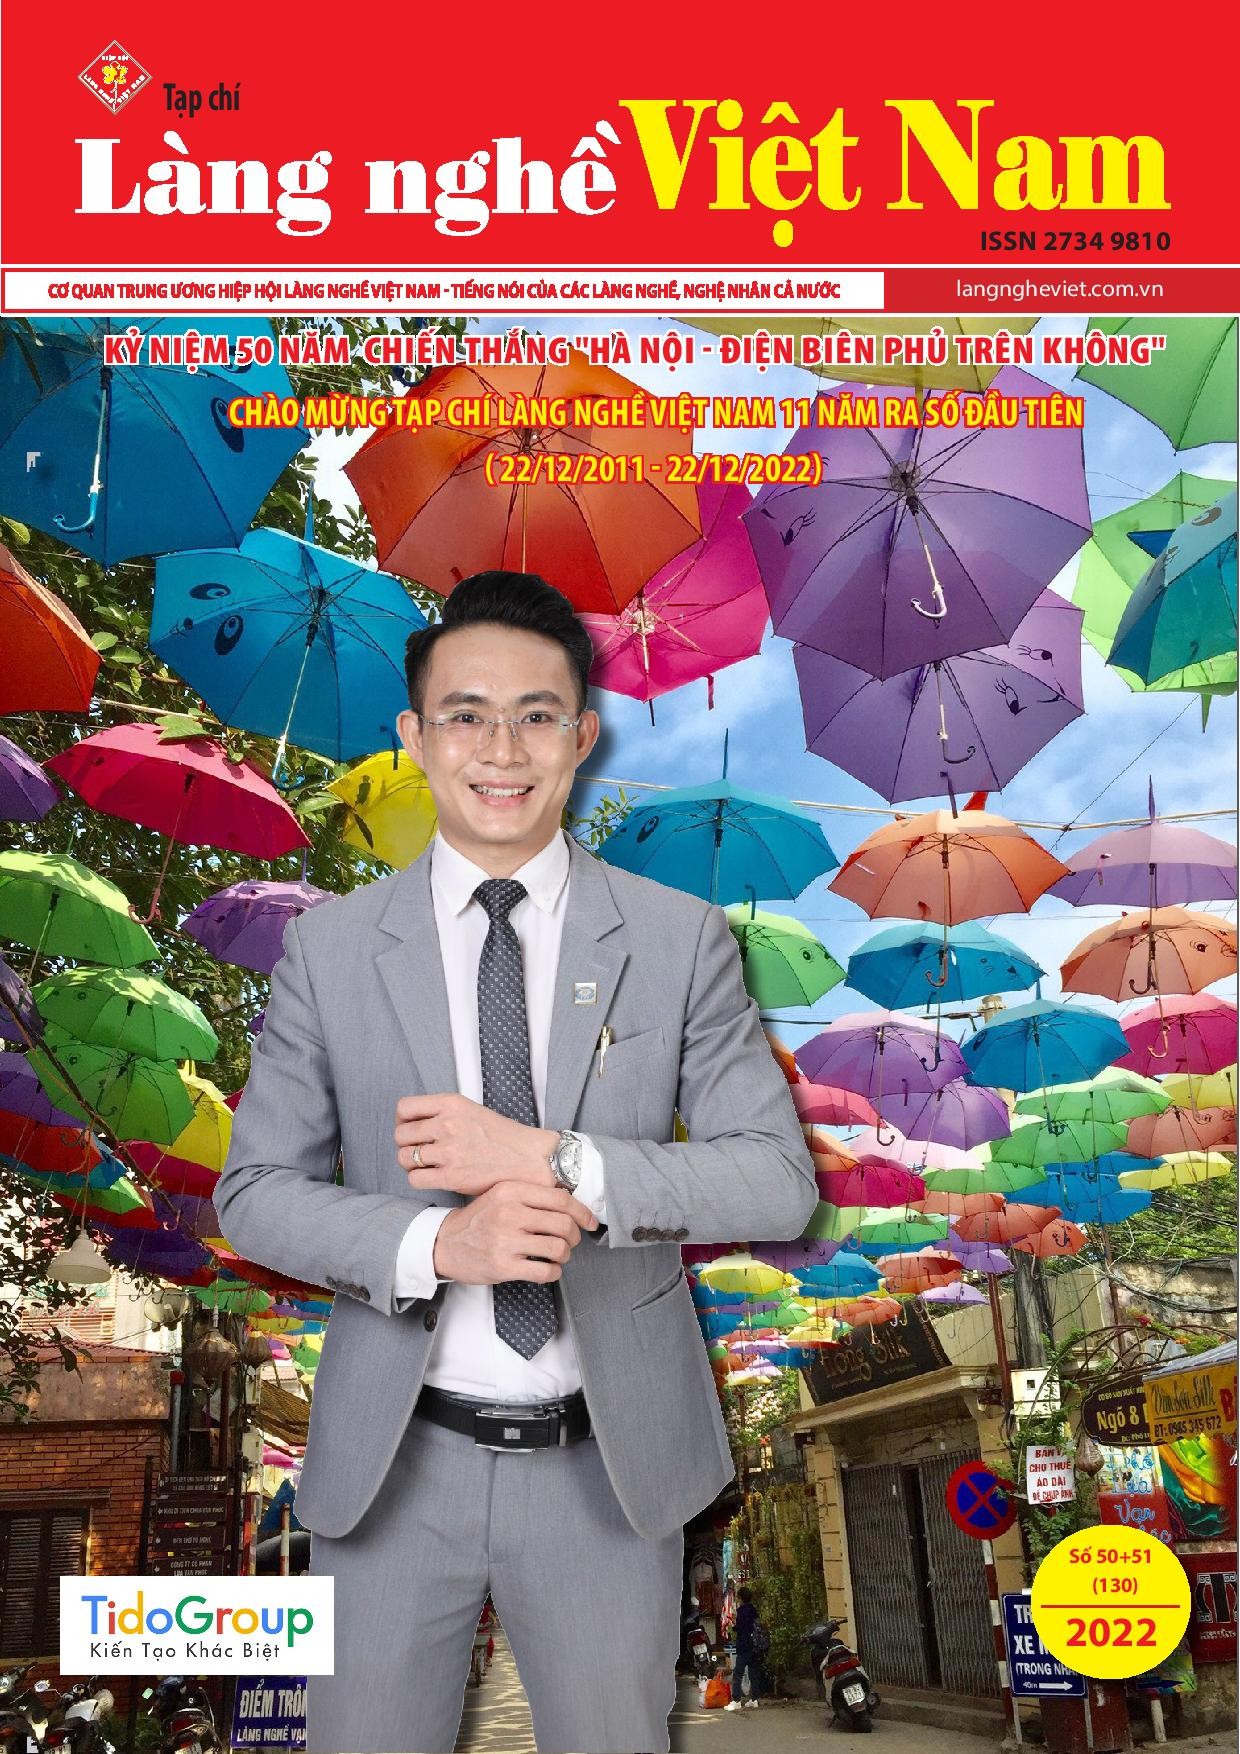 Tạp chí Làng nghề Việt Nam số 50+51 (130)/2022 (II)